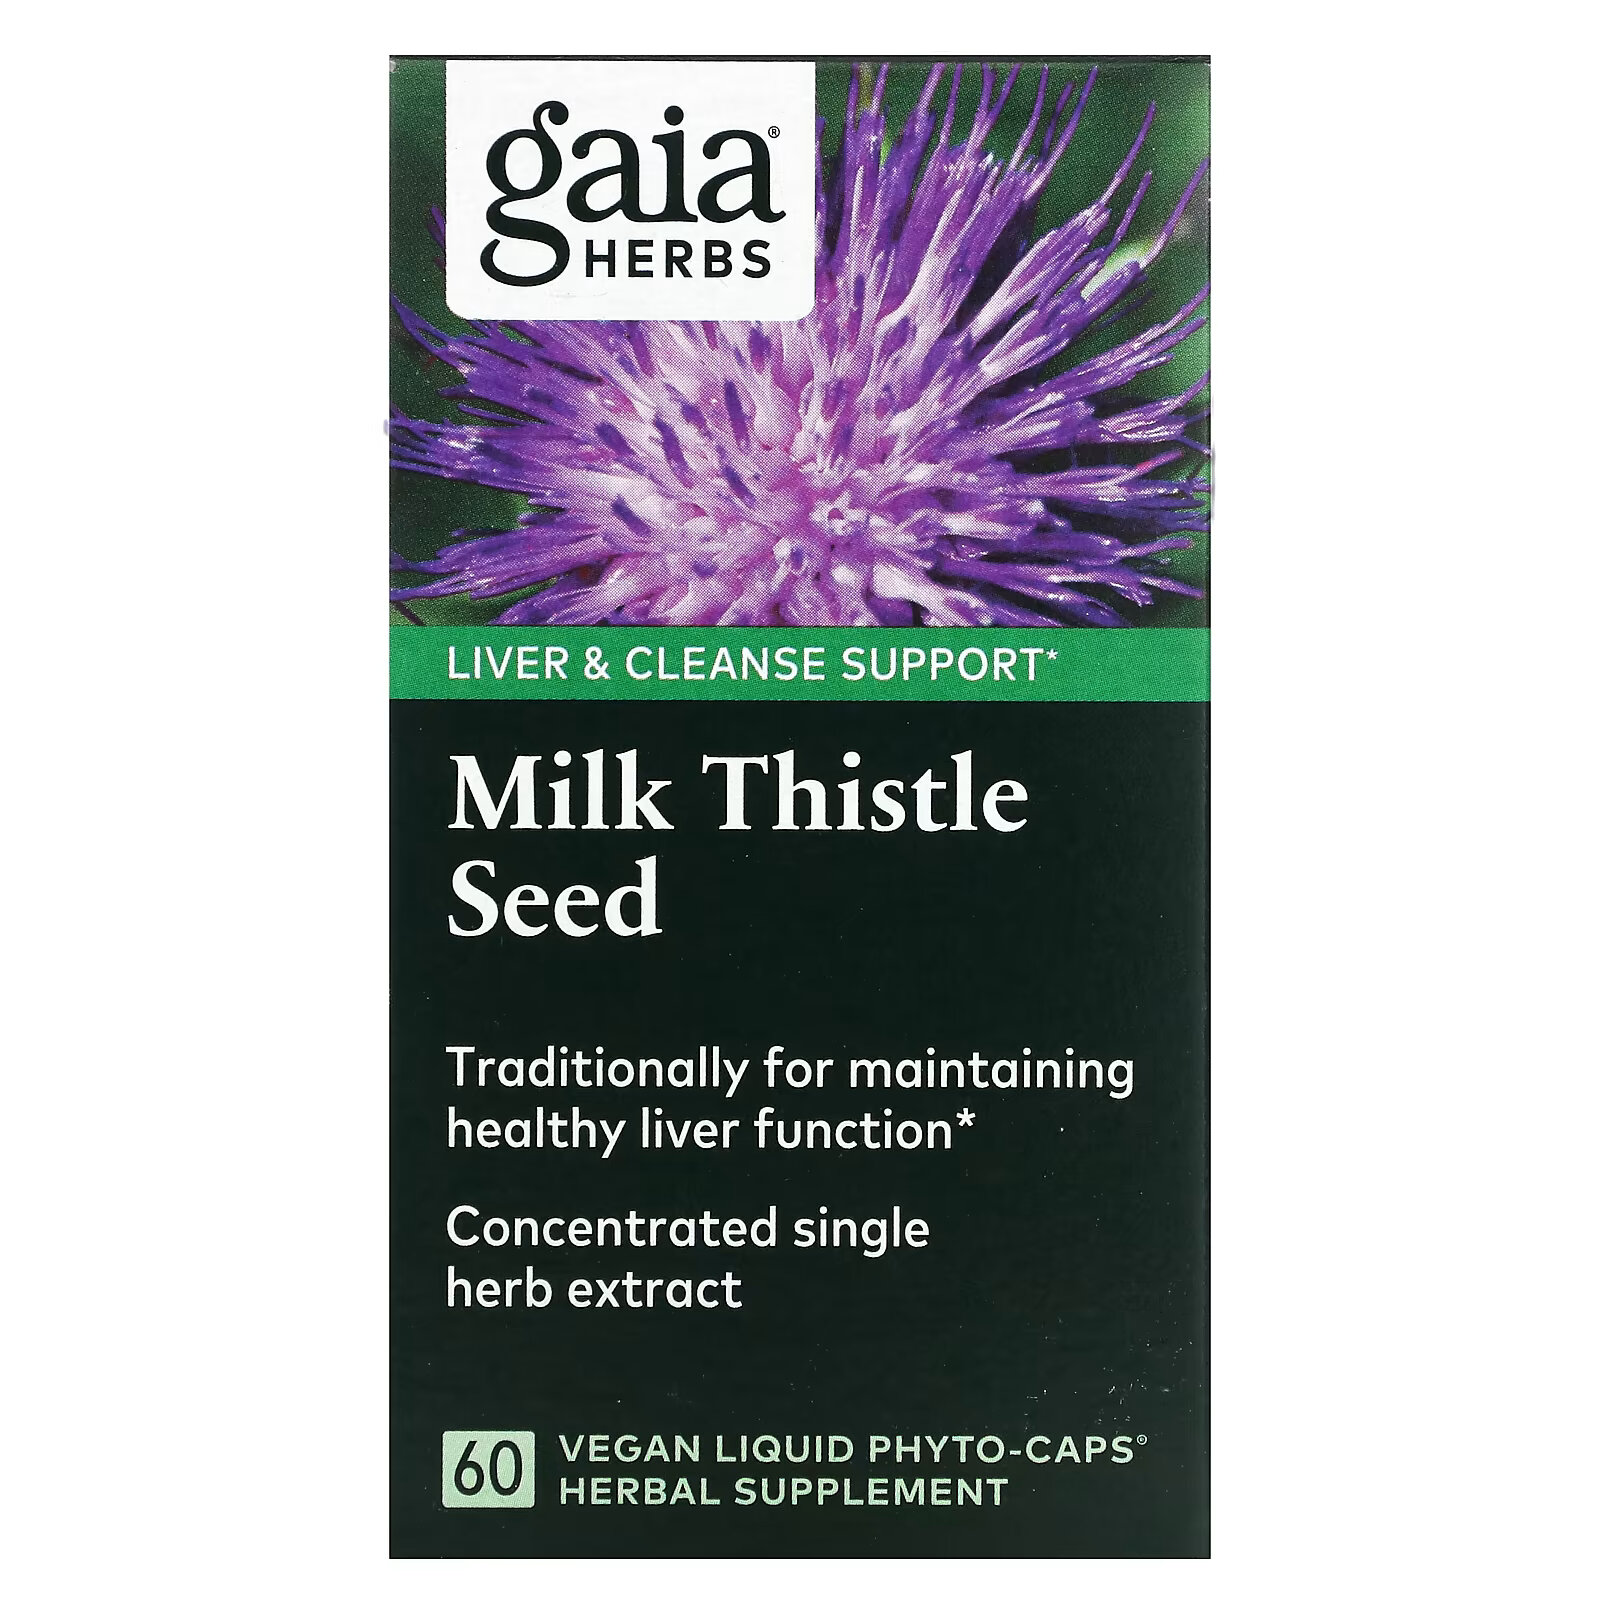 Gaia Herbs, семена расторопши, 60 веганских капсул с жидким содержимым Liquid Phyto-Cap gaia herbs средство для поддержания здоровья печени 60 веганских жидких капсул phyto cap